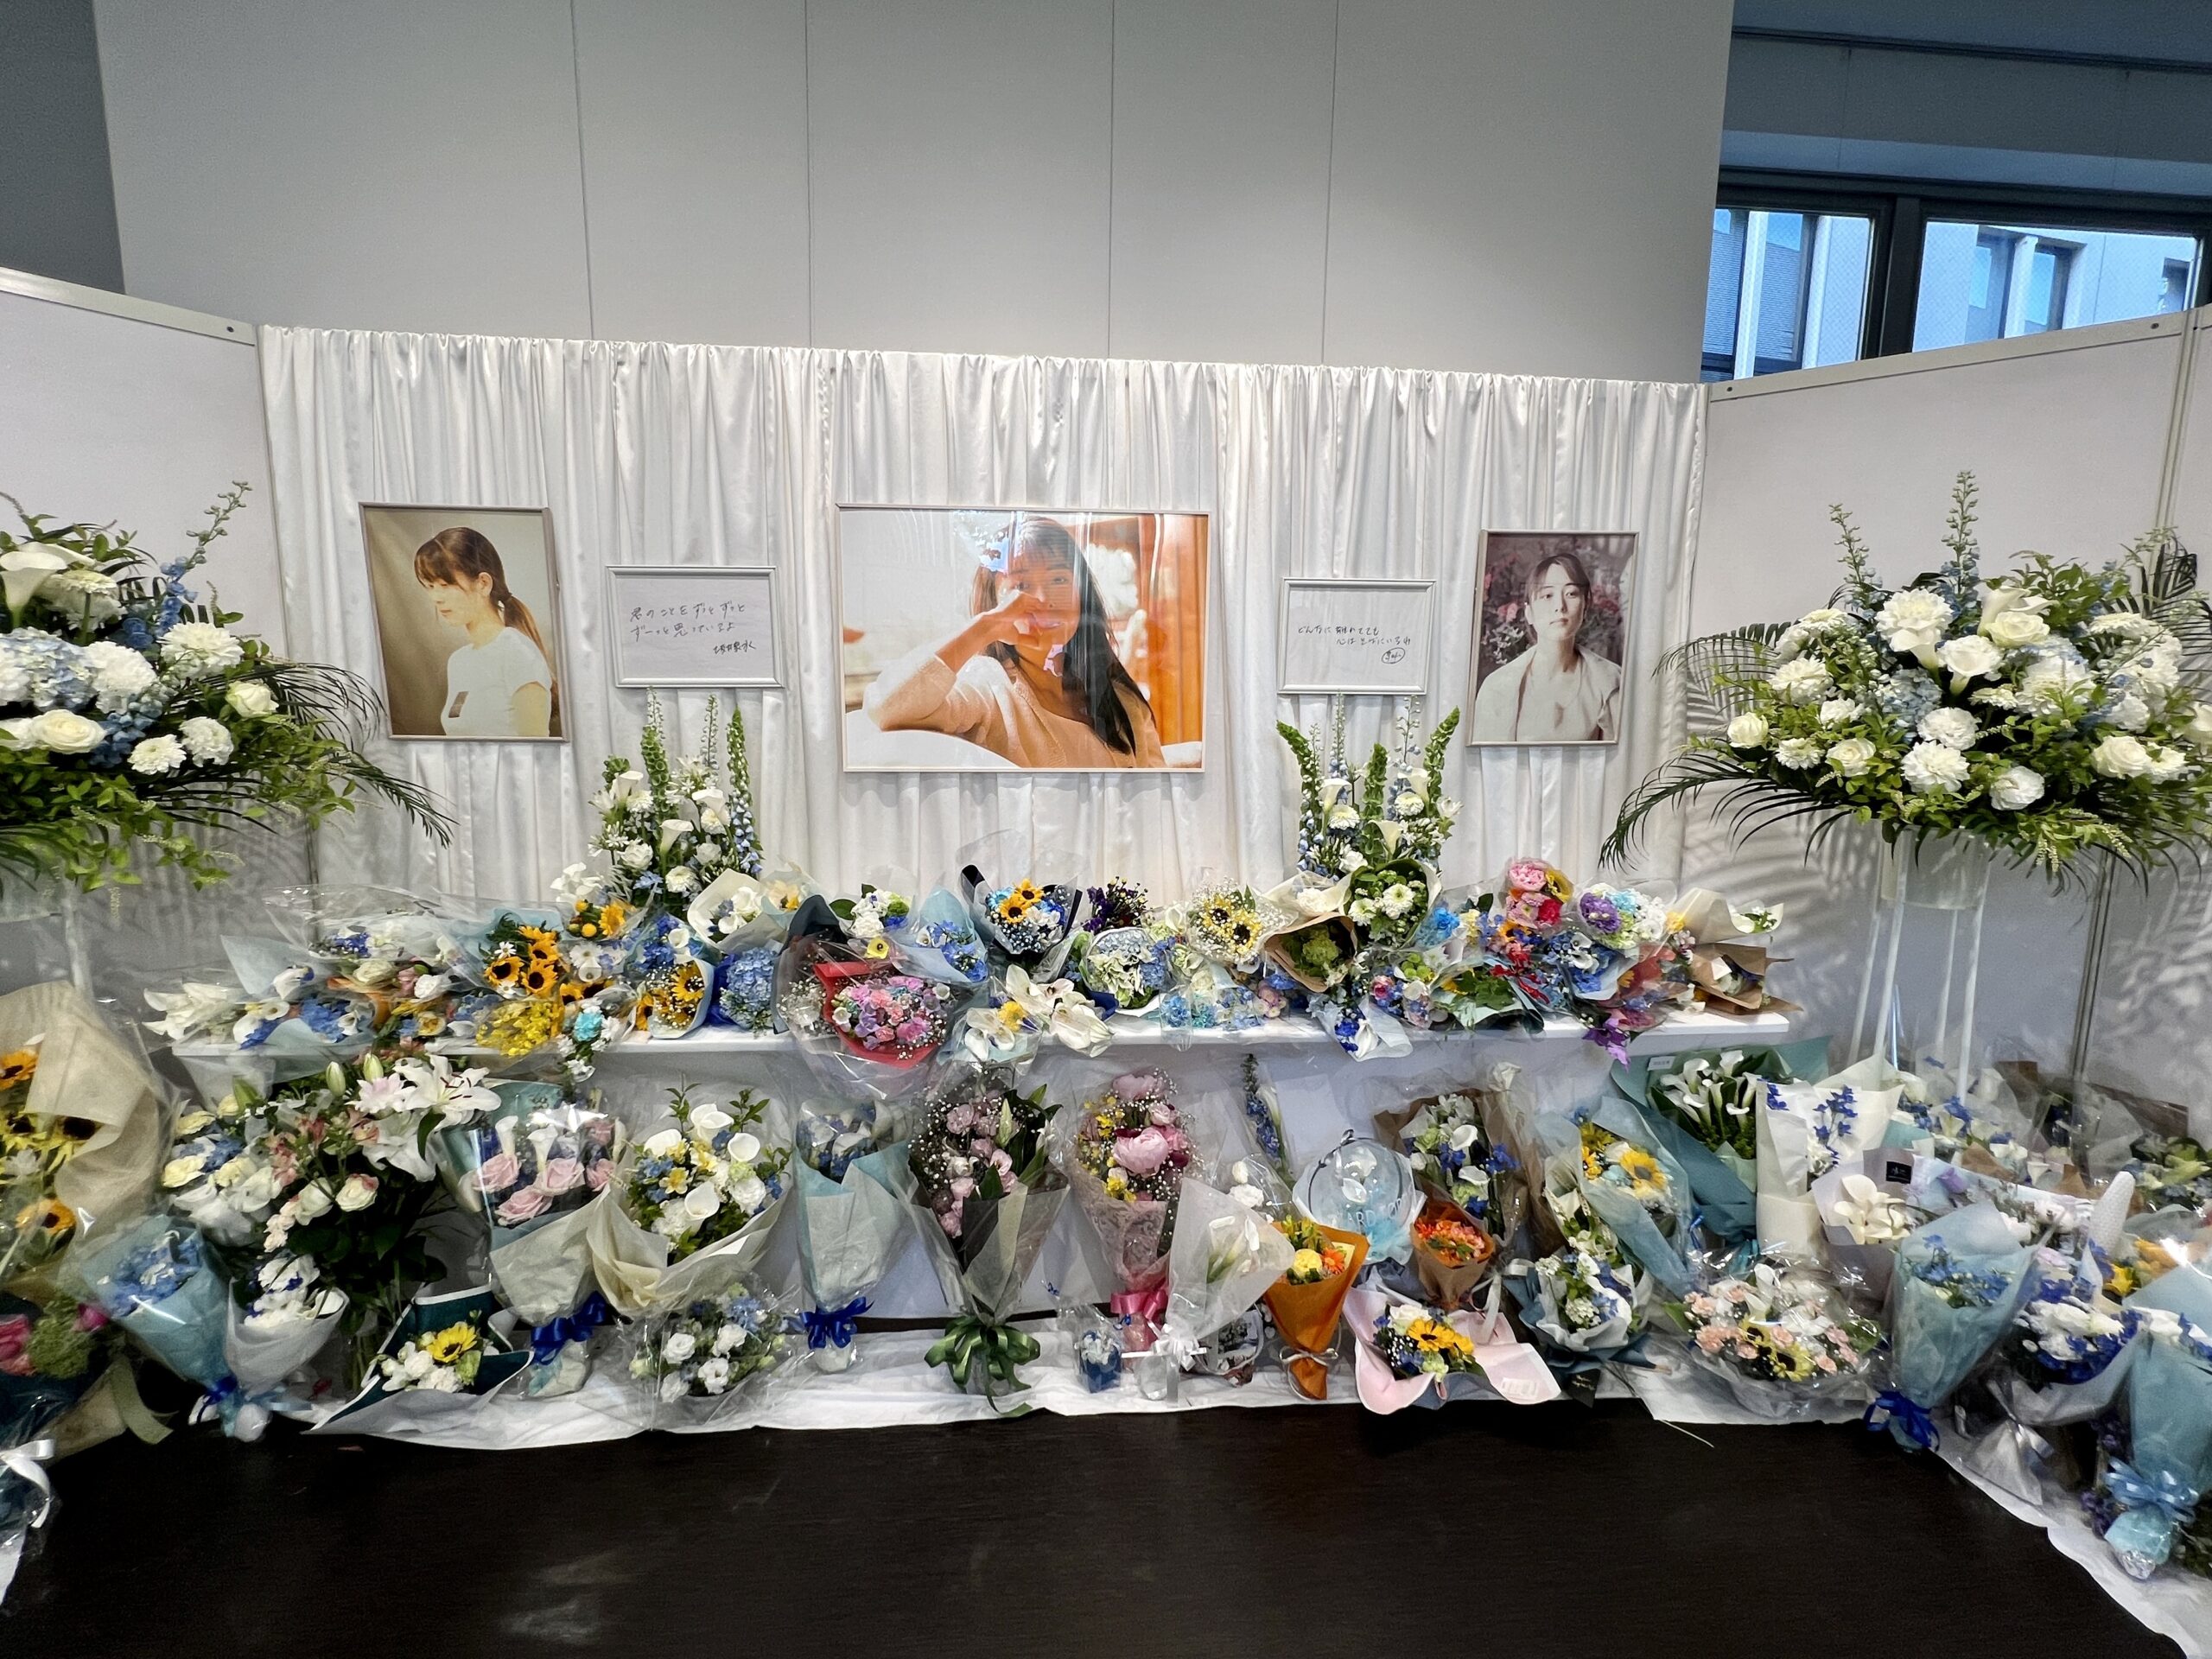 ZARD・坂井泉水さんの16回目の命日に設置された献花台（東京）の様子